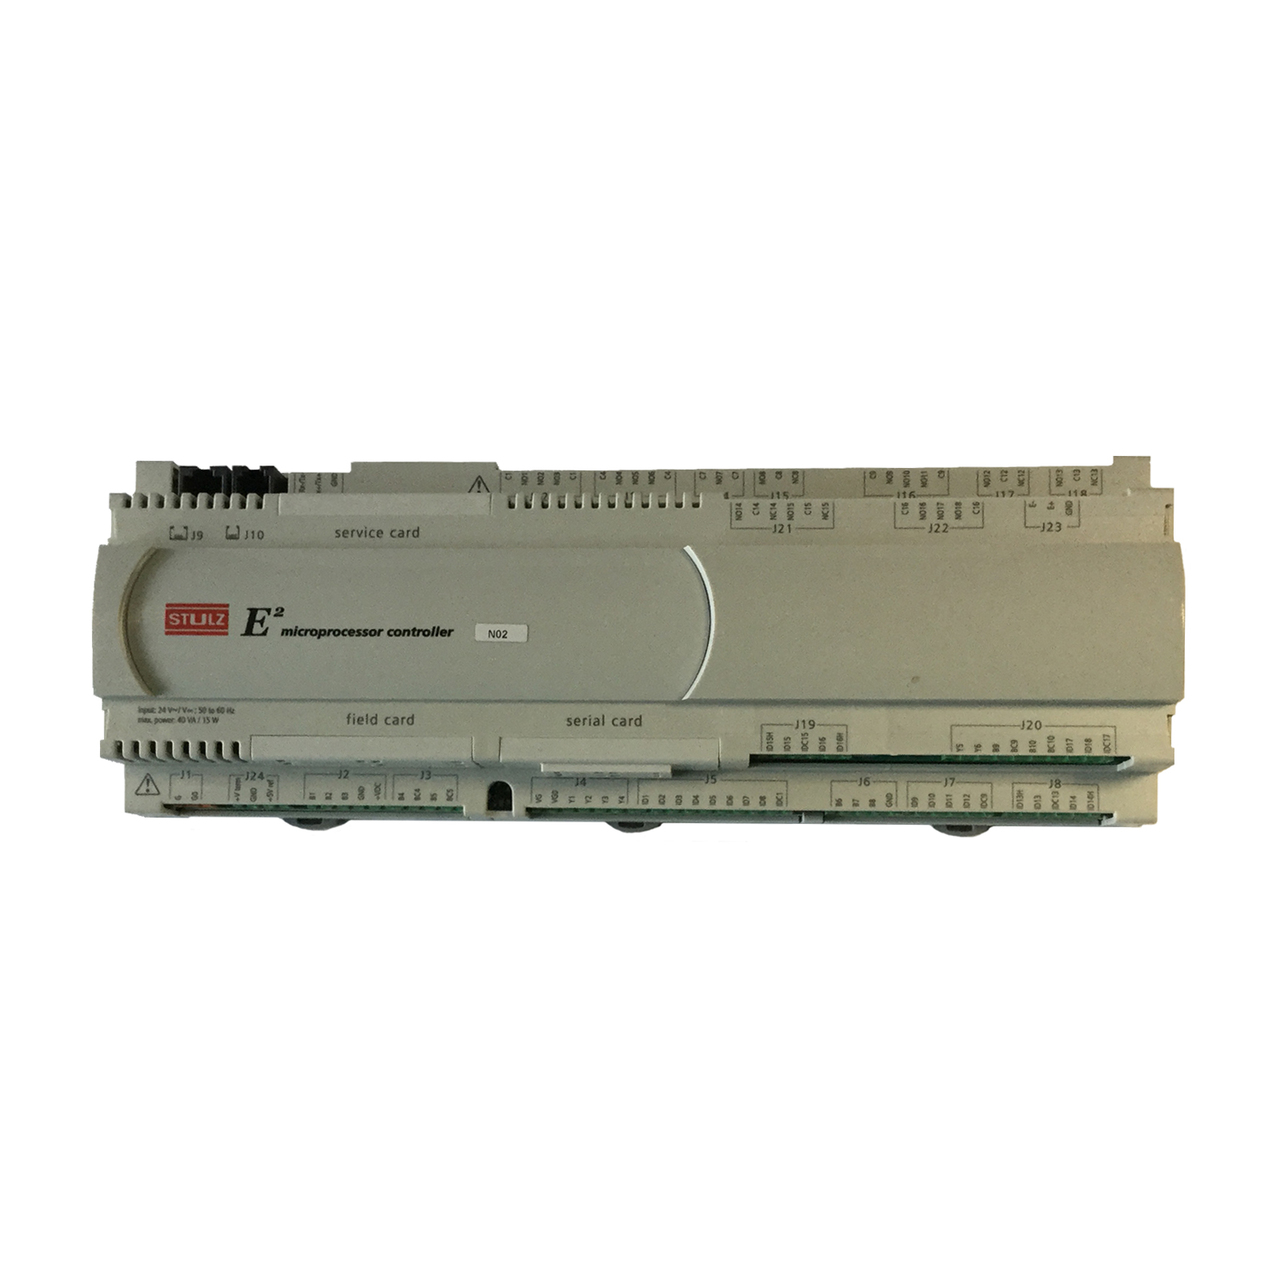 784677-001 | HPE Pc03 Controller Stulz E2 Microprocessor Control Unit